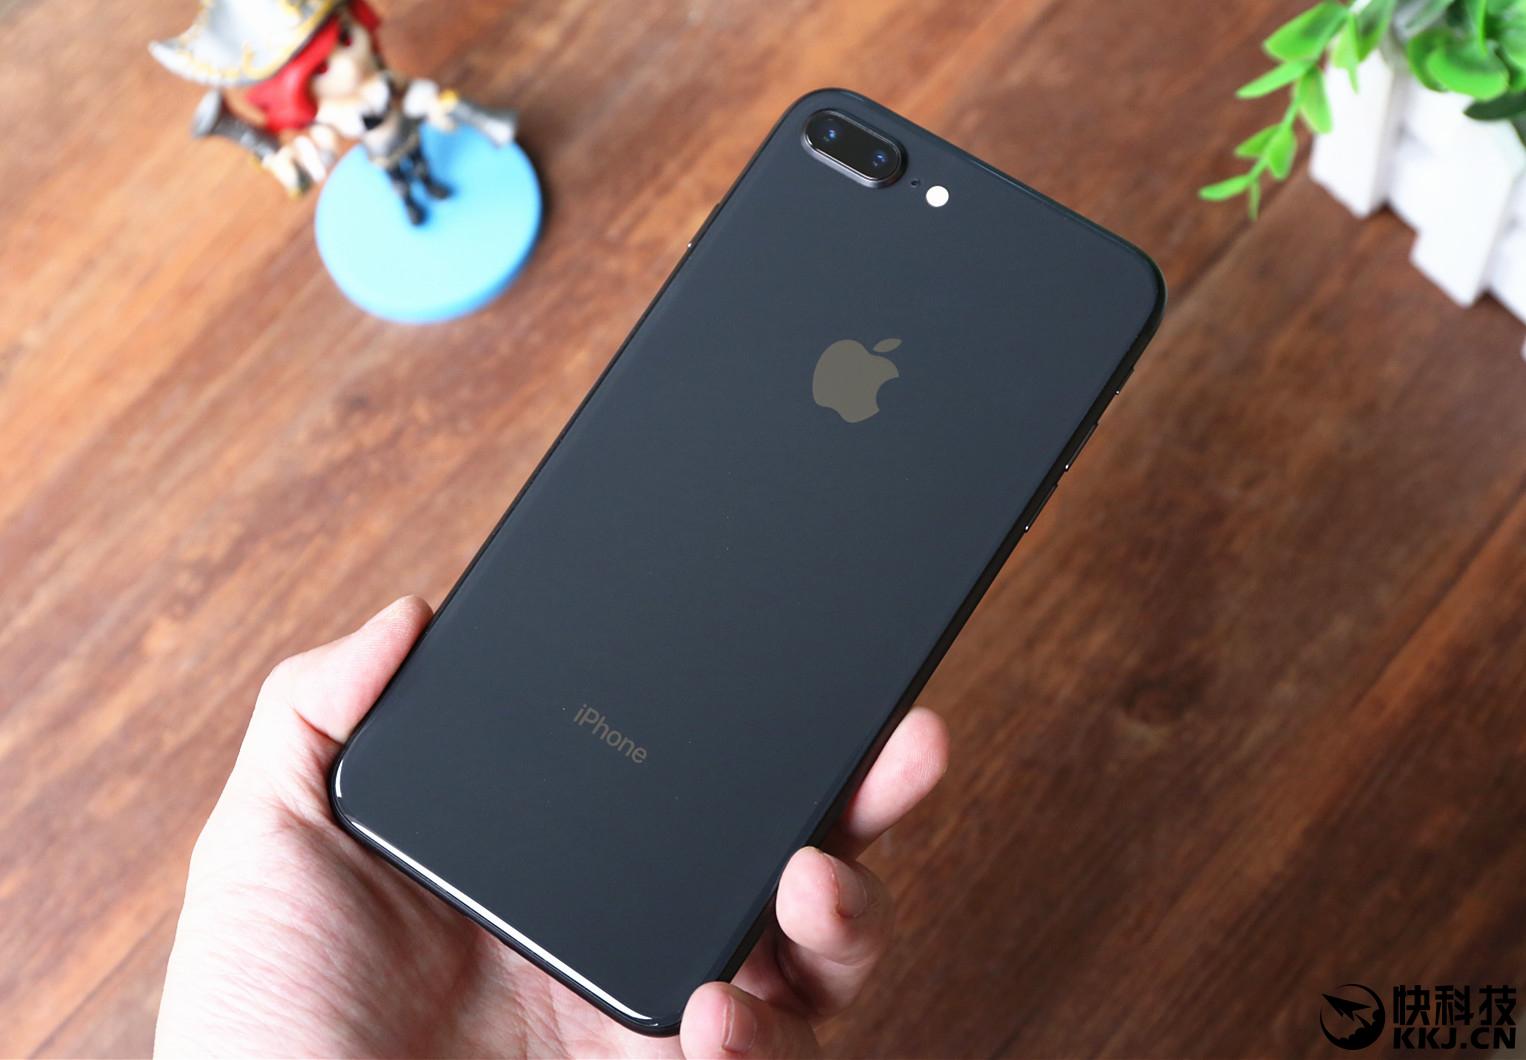 iphone 8系列依然只支持单nano-sim卡,想要双卡双待的用户